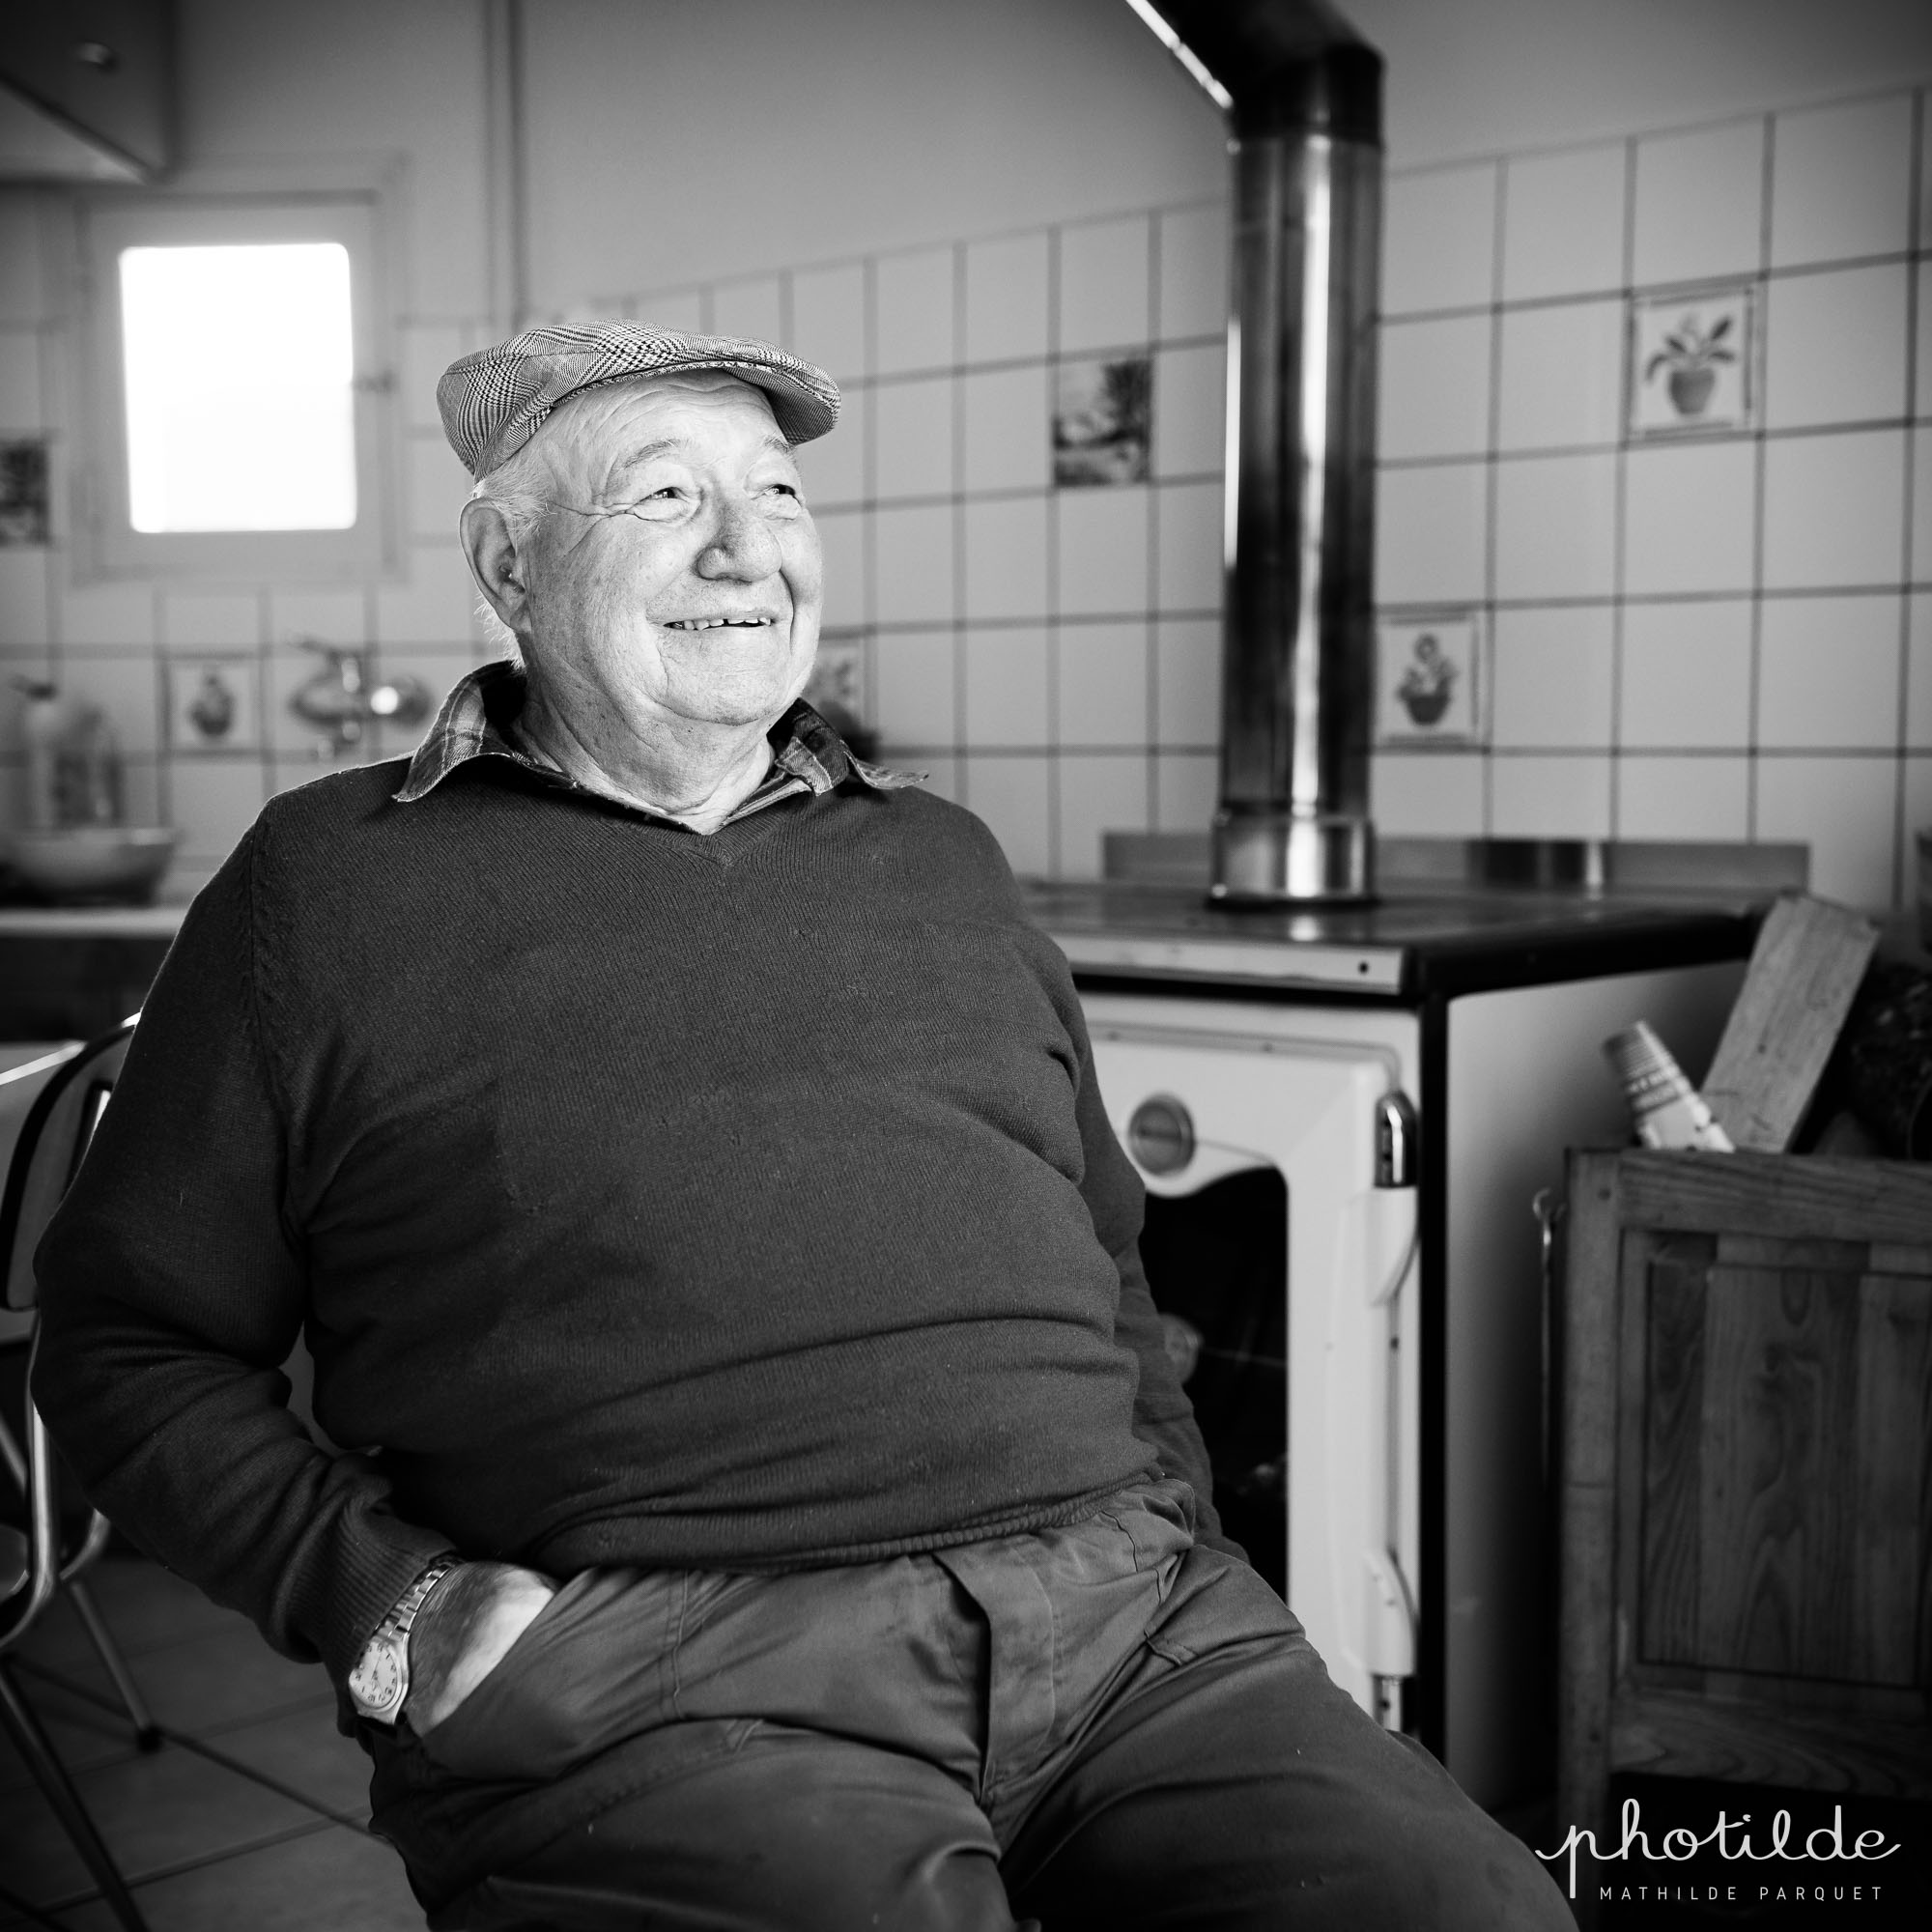 Monsieur de quatre vingt ans environ assis dans sa cuisine. Il porte un casquette et est souriant. une vieille gazinière à bois est en arrière plan.